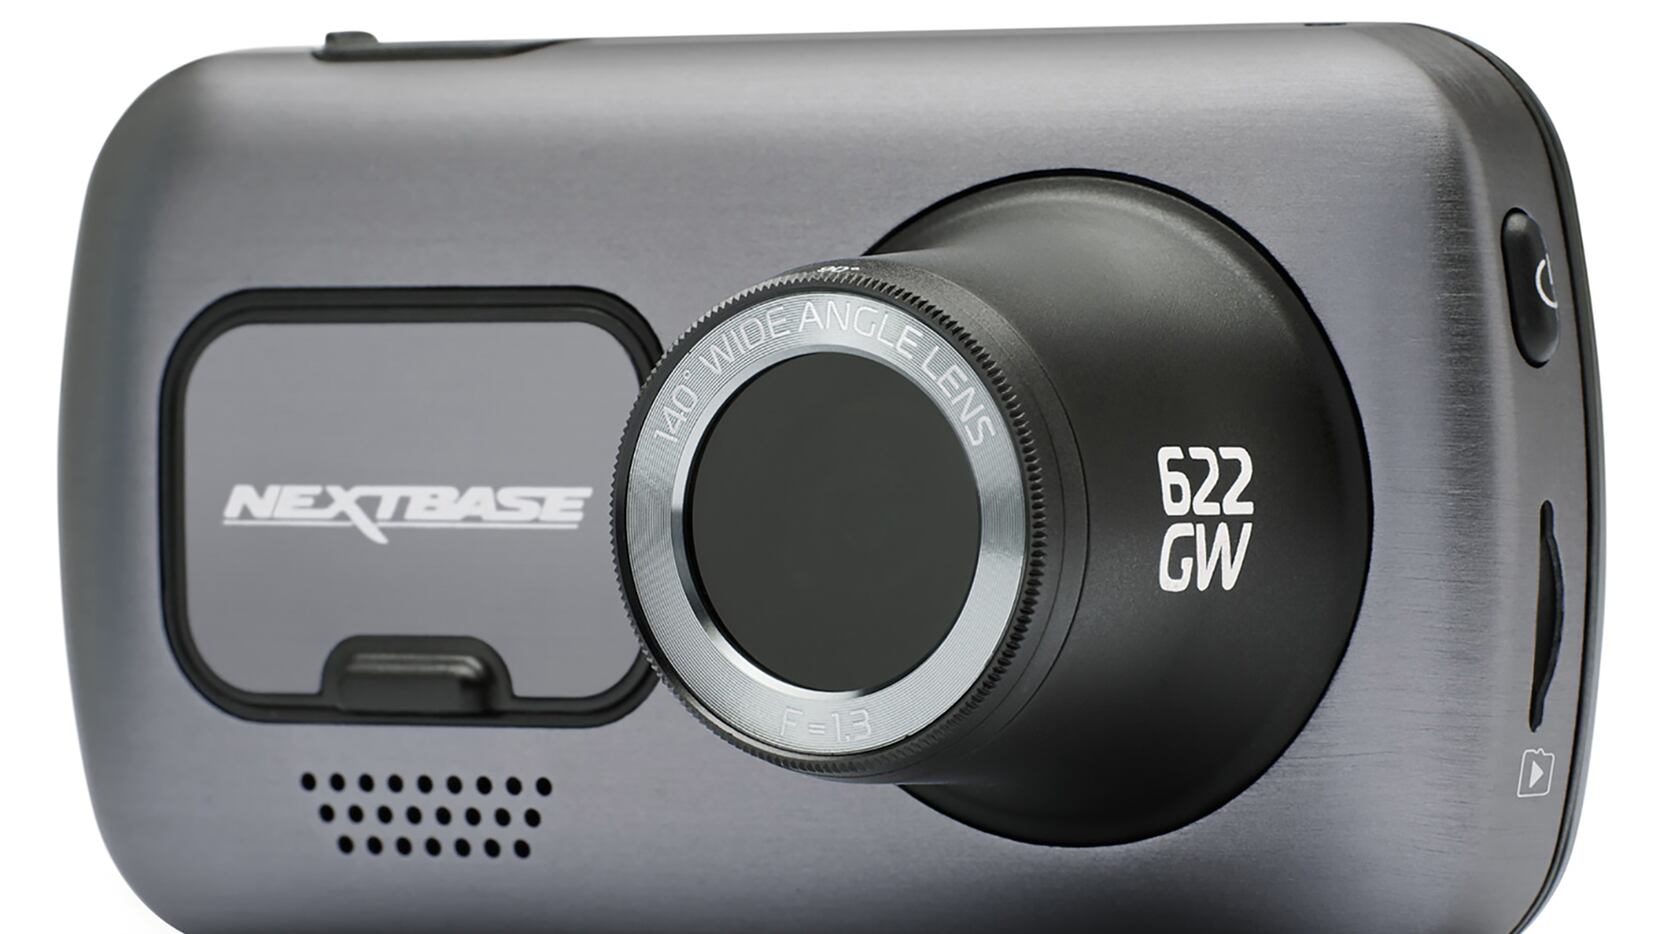 The Nextbase 622GW dash cam checks all the boxes